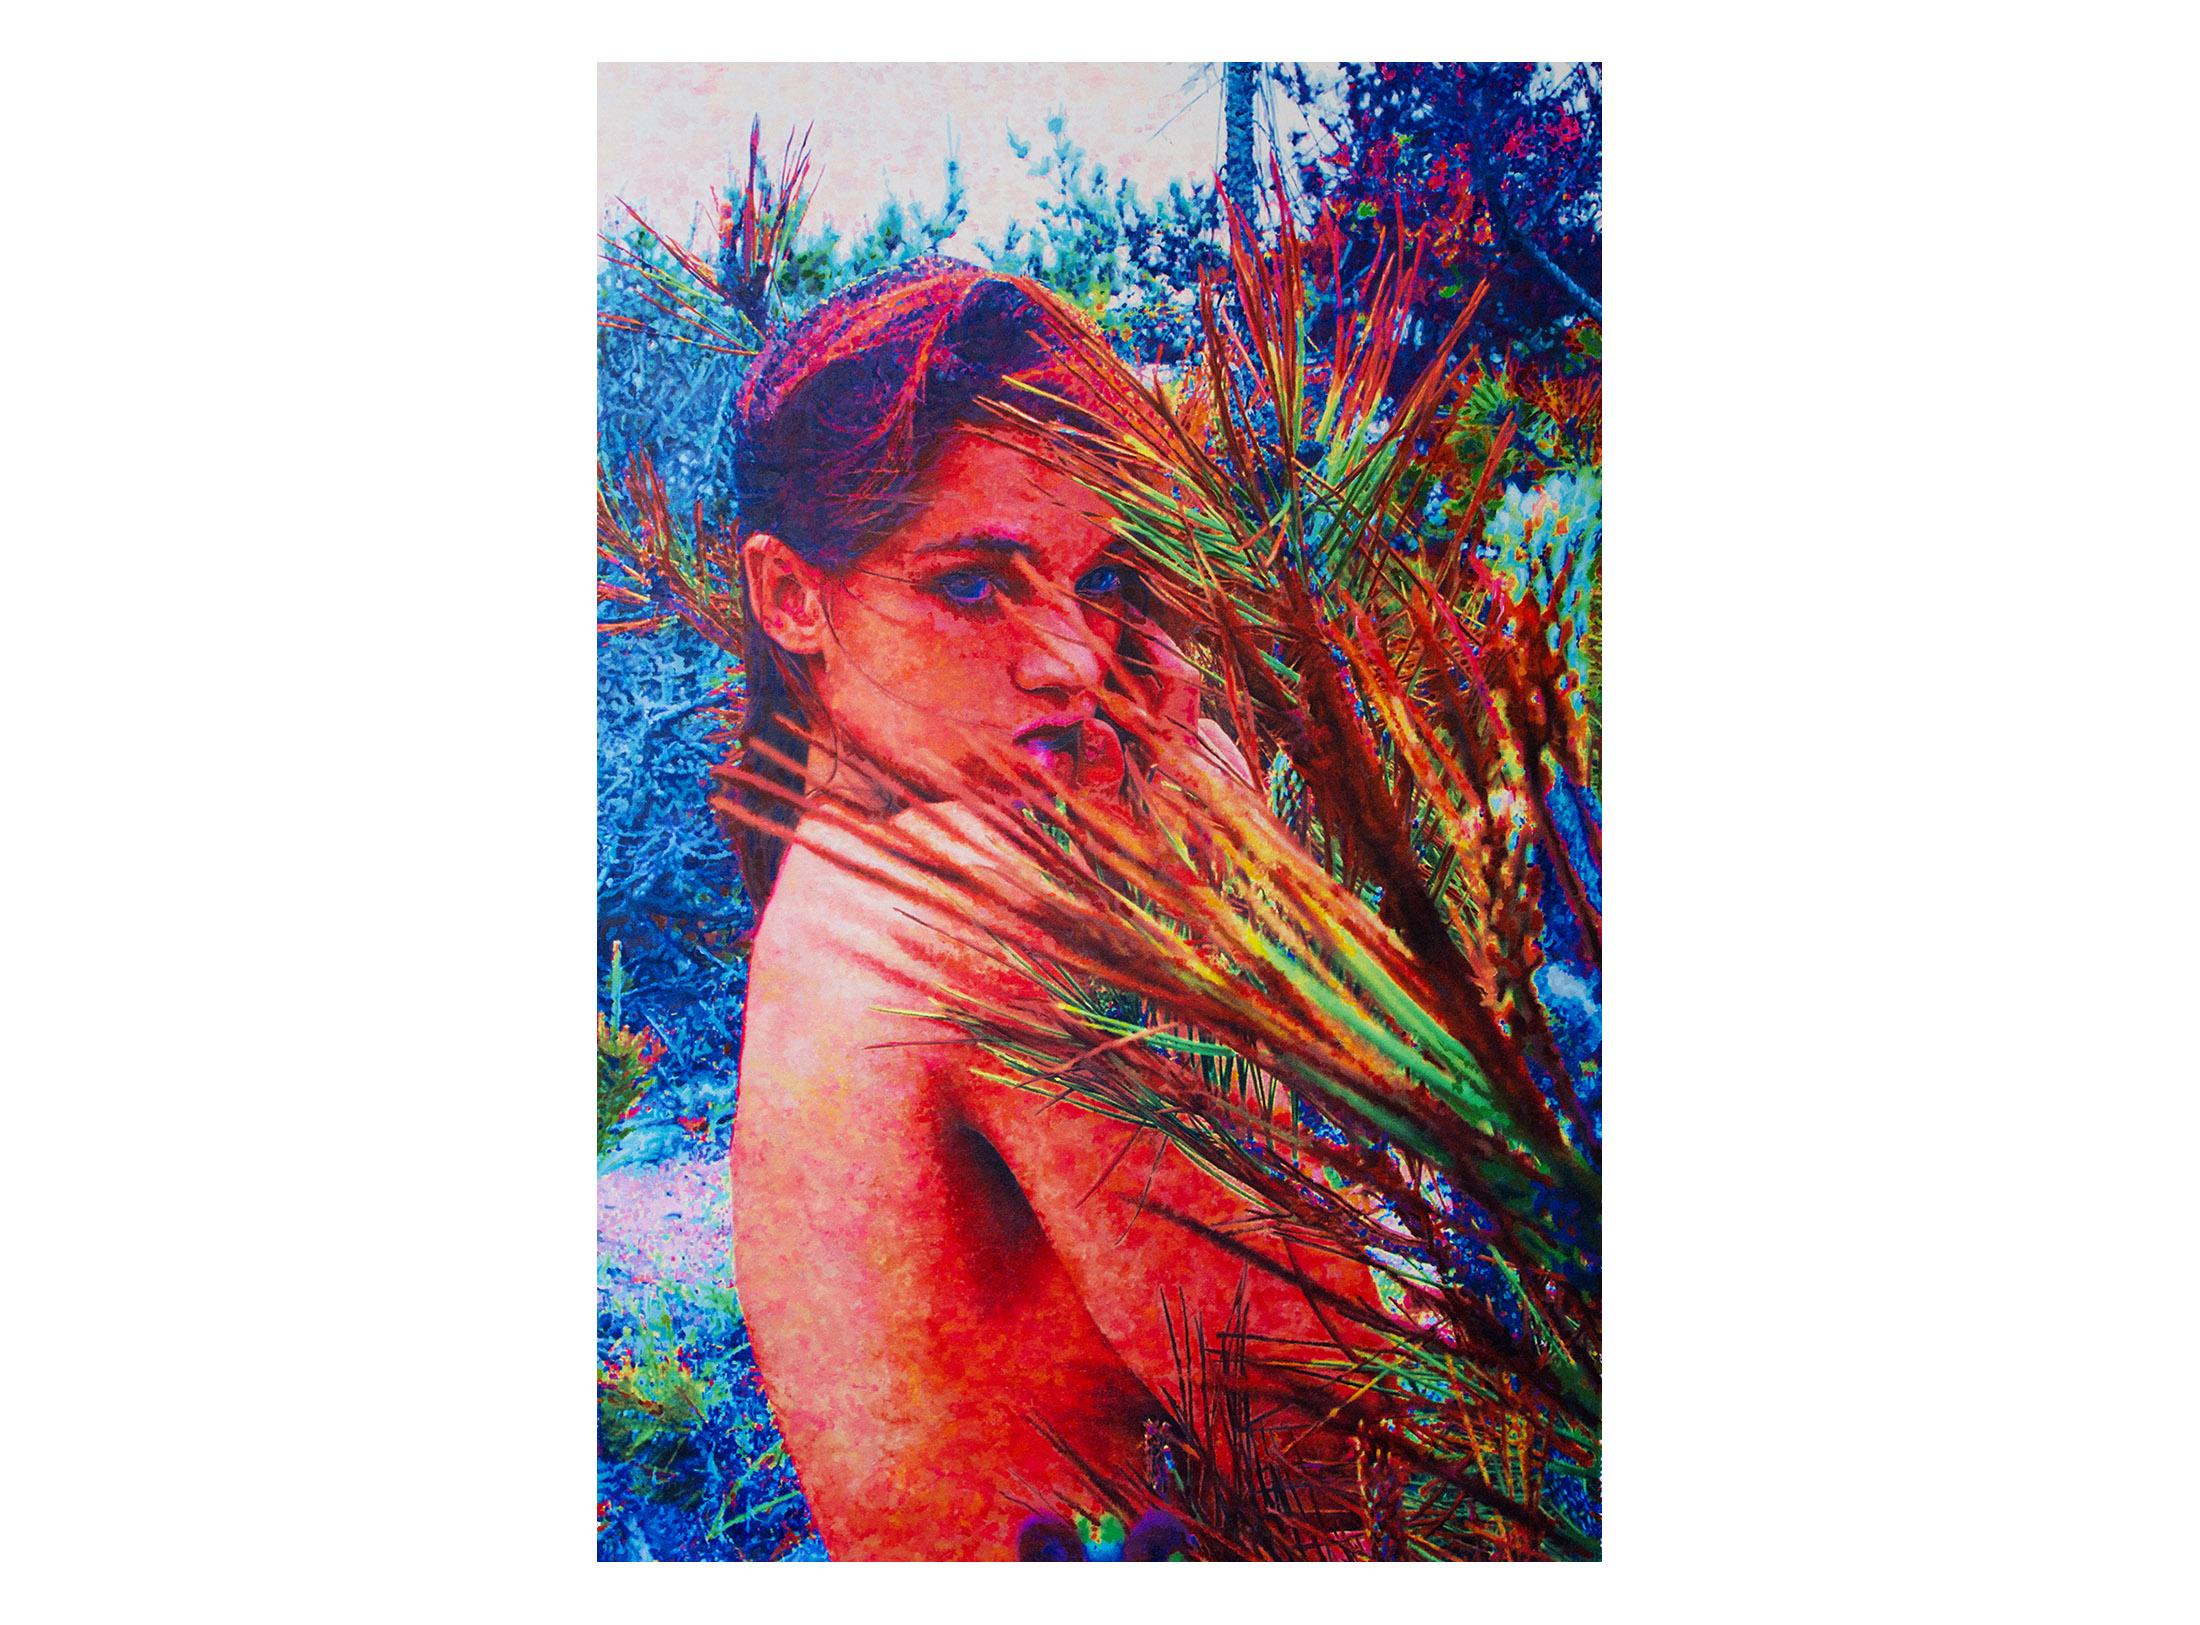 Samantha Gradoville, Reeds (Blue) 2014